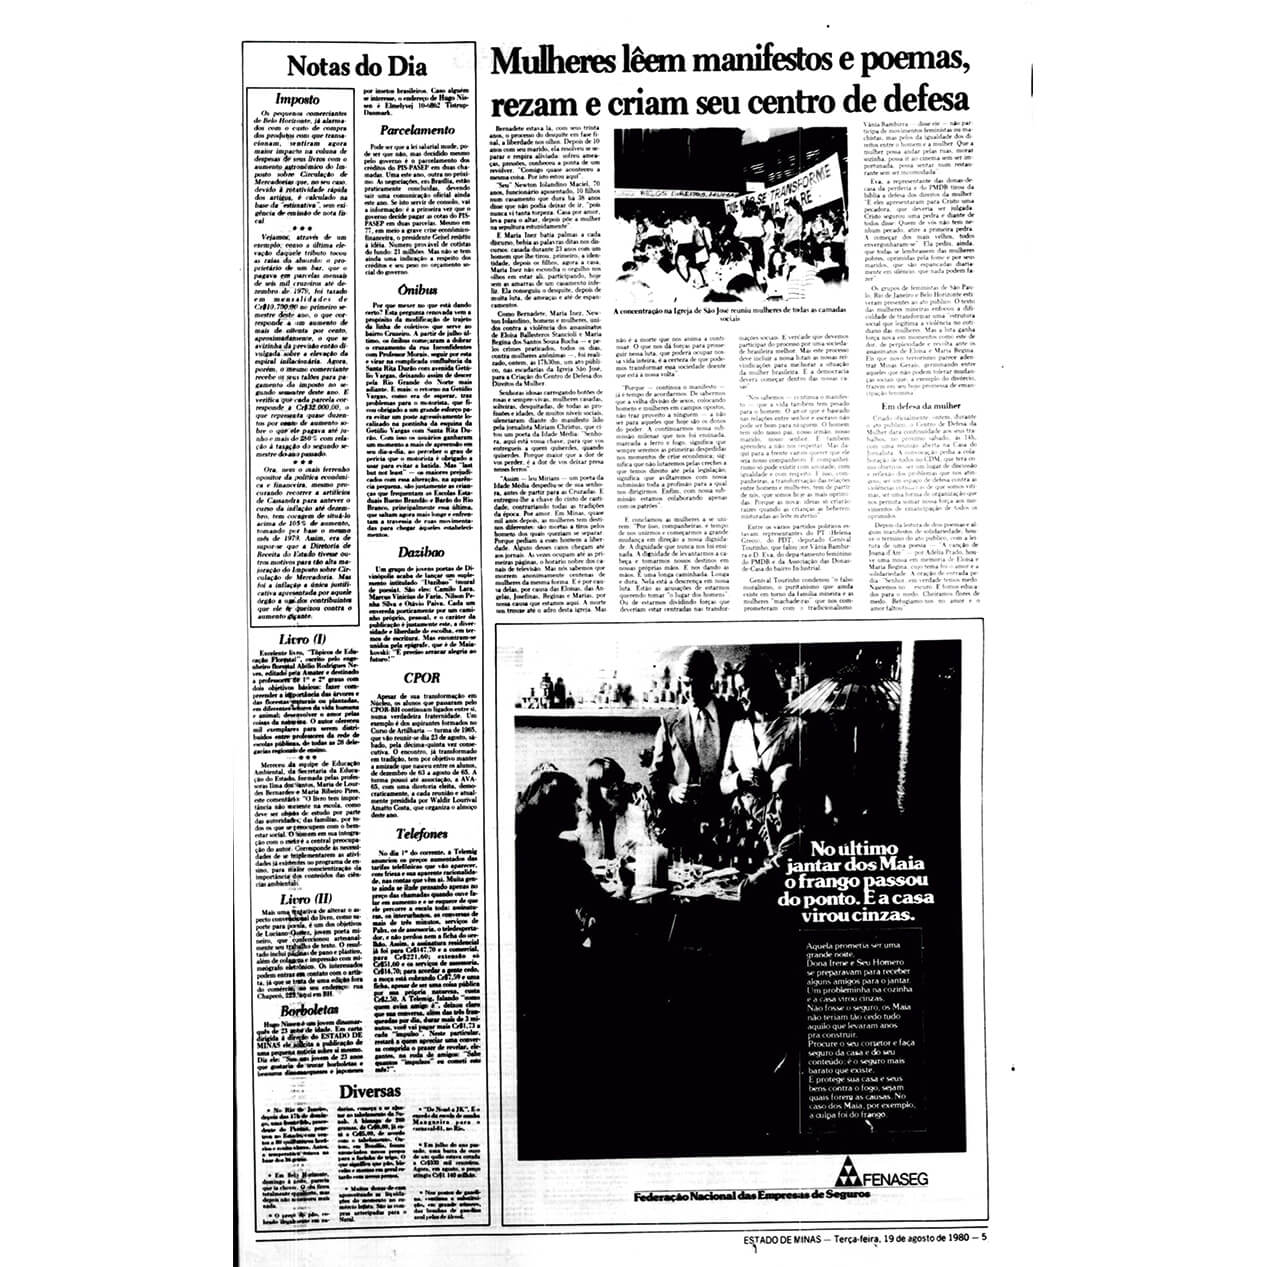 EXPOSIÇÃO DIGITAL - REPORTAGEM DE O ESTADO DE MINAS DO ATO PÚBLICO DE 1980